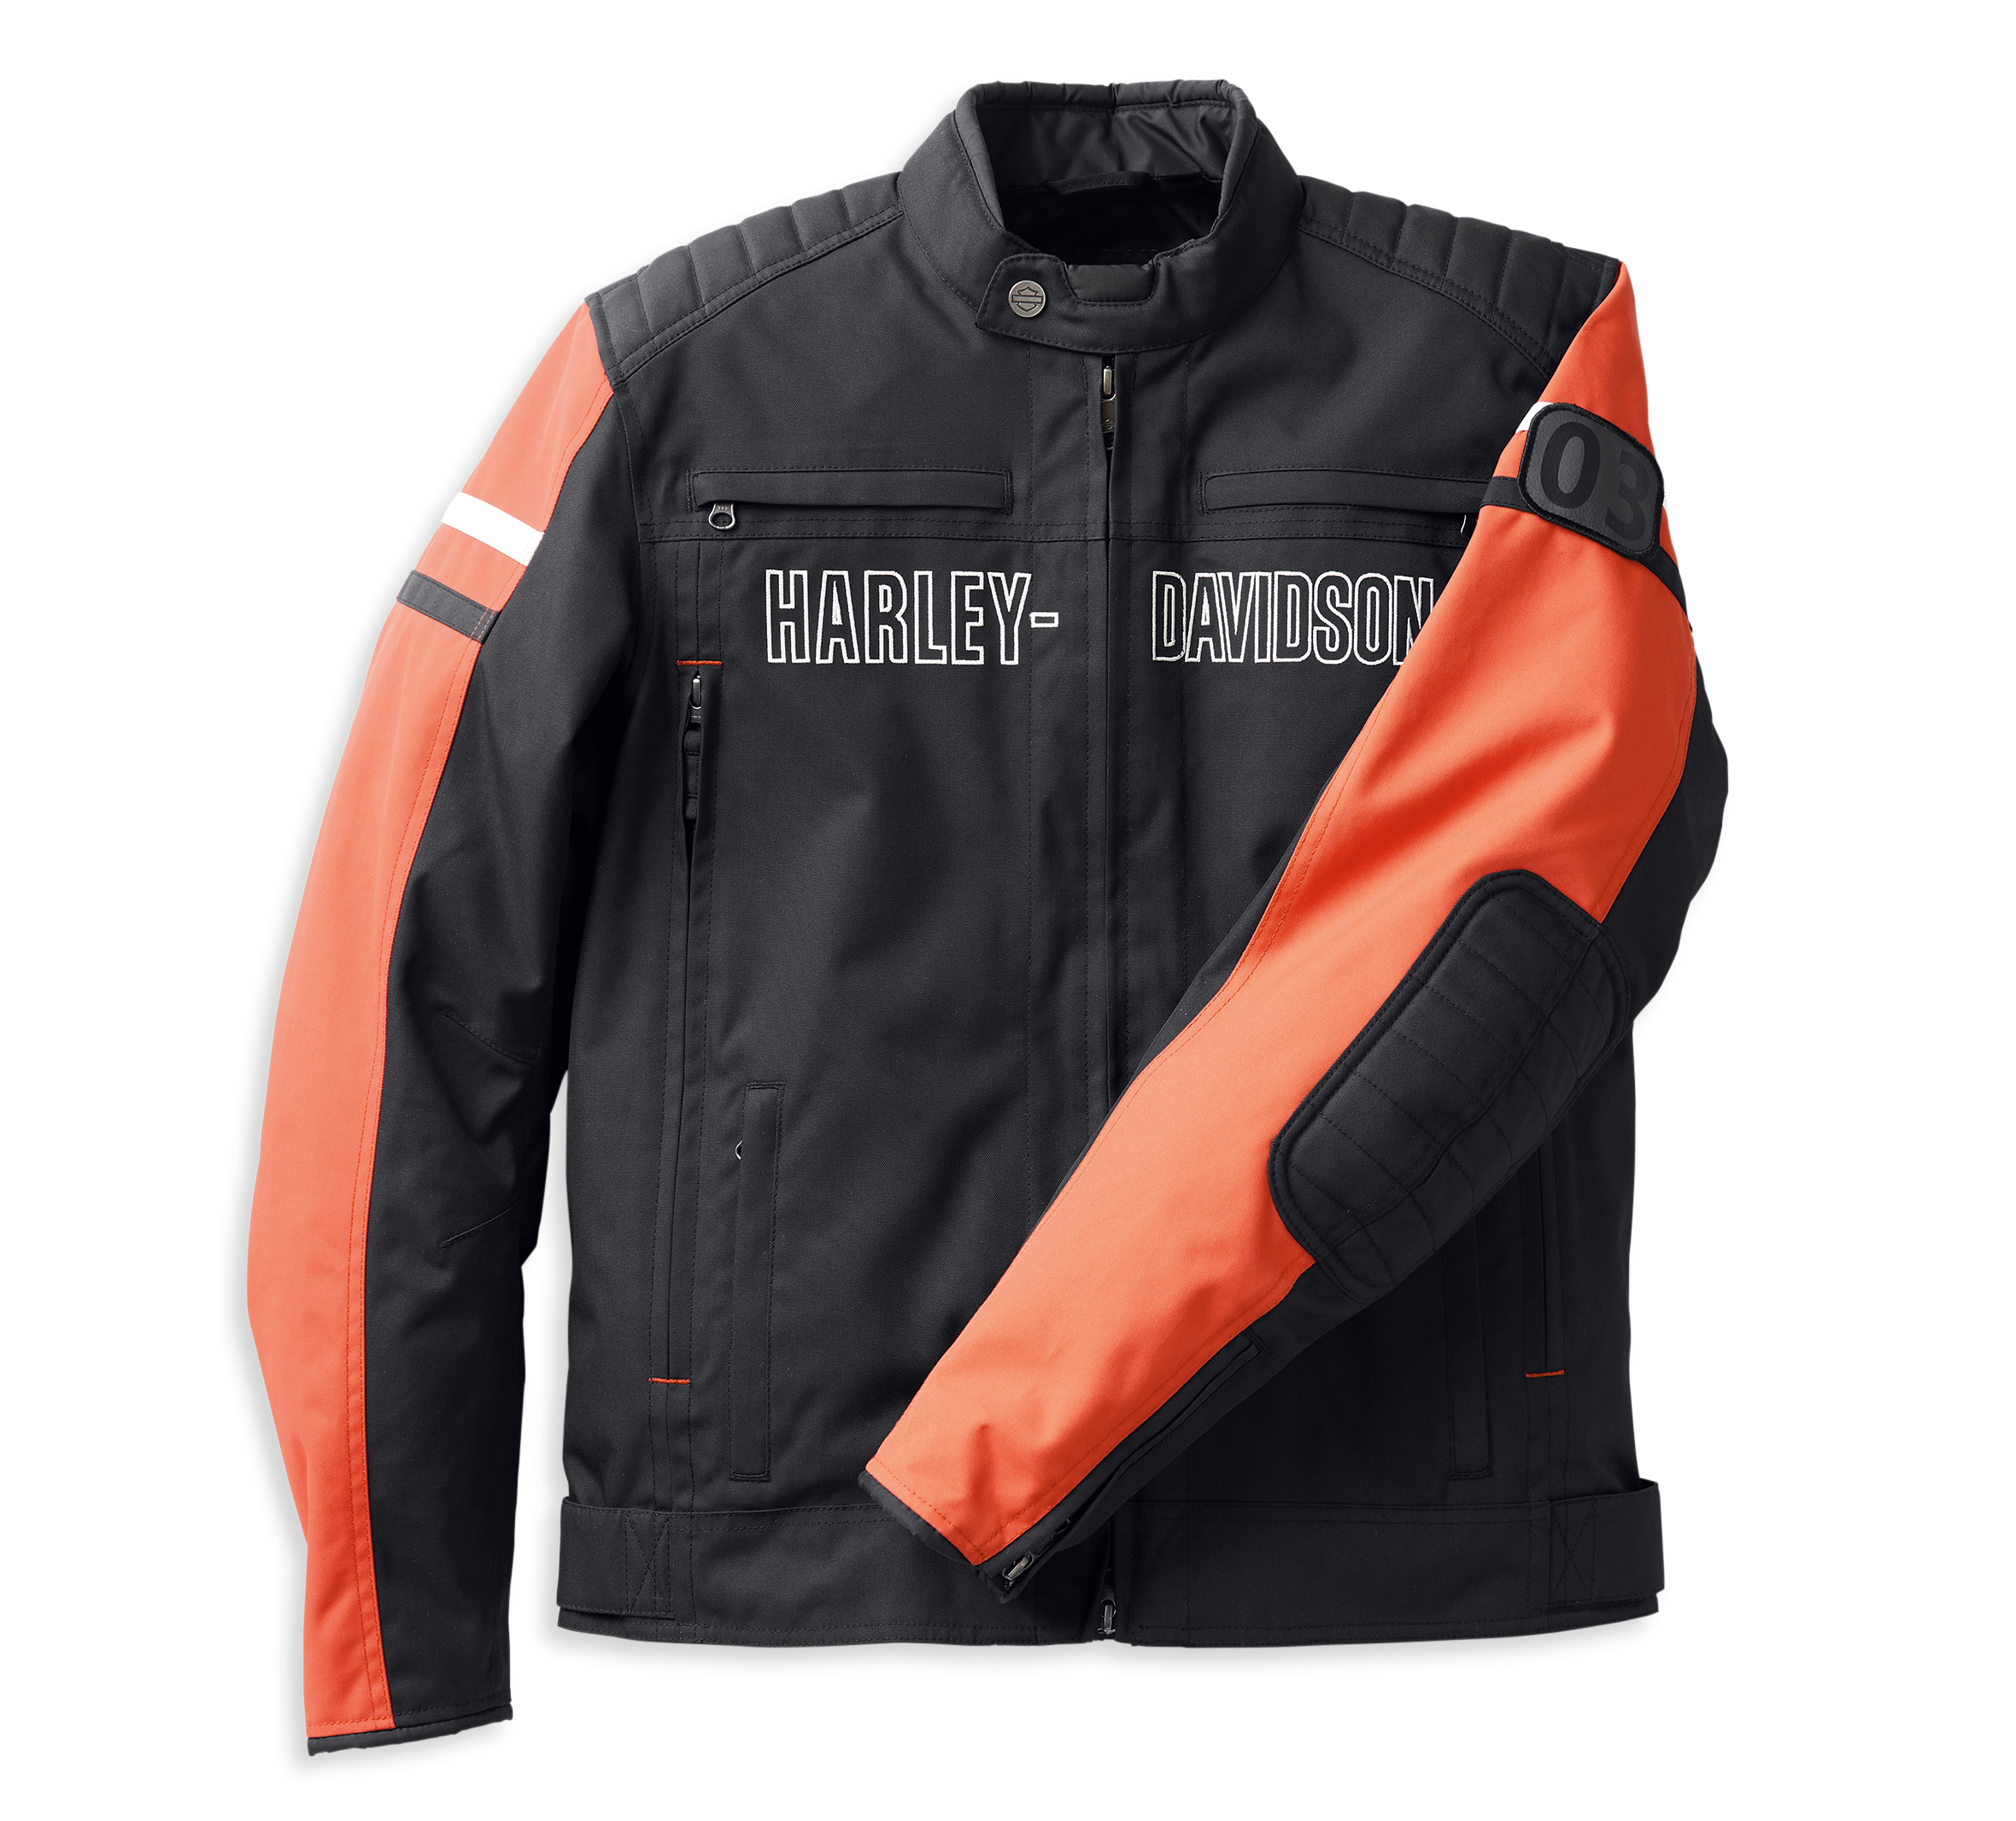 Harley-Davidson Mesh Motorcycle Riding Jacket w/Removeable Plates - Size  Large | eBay